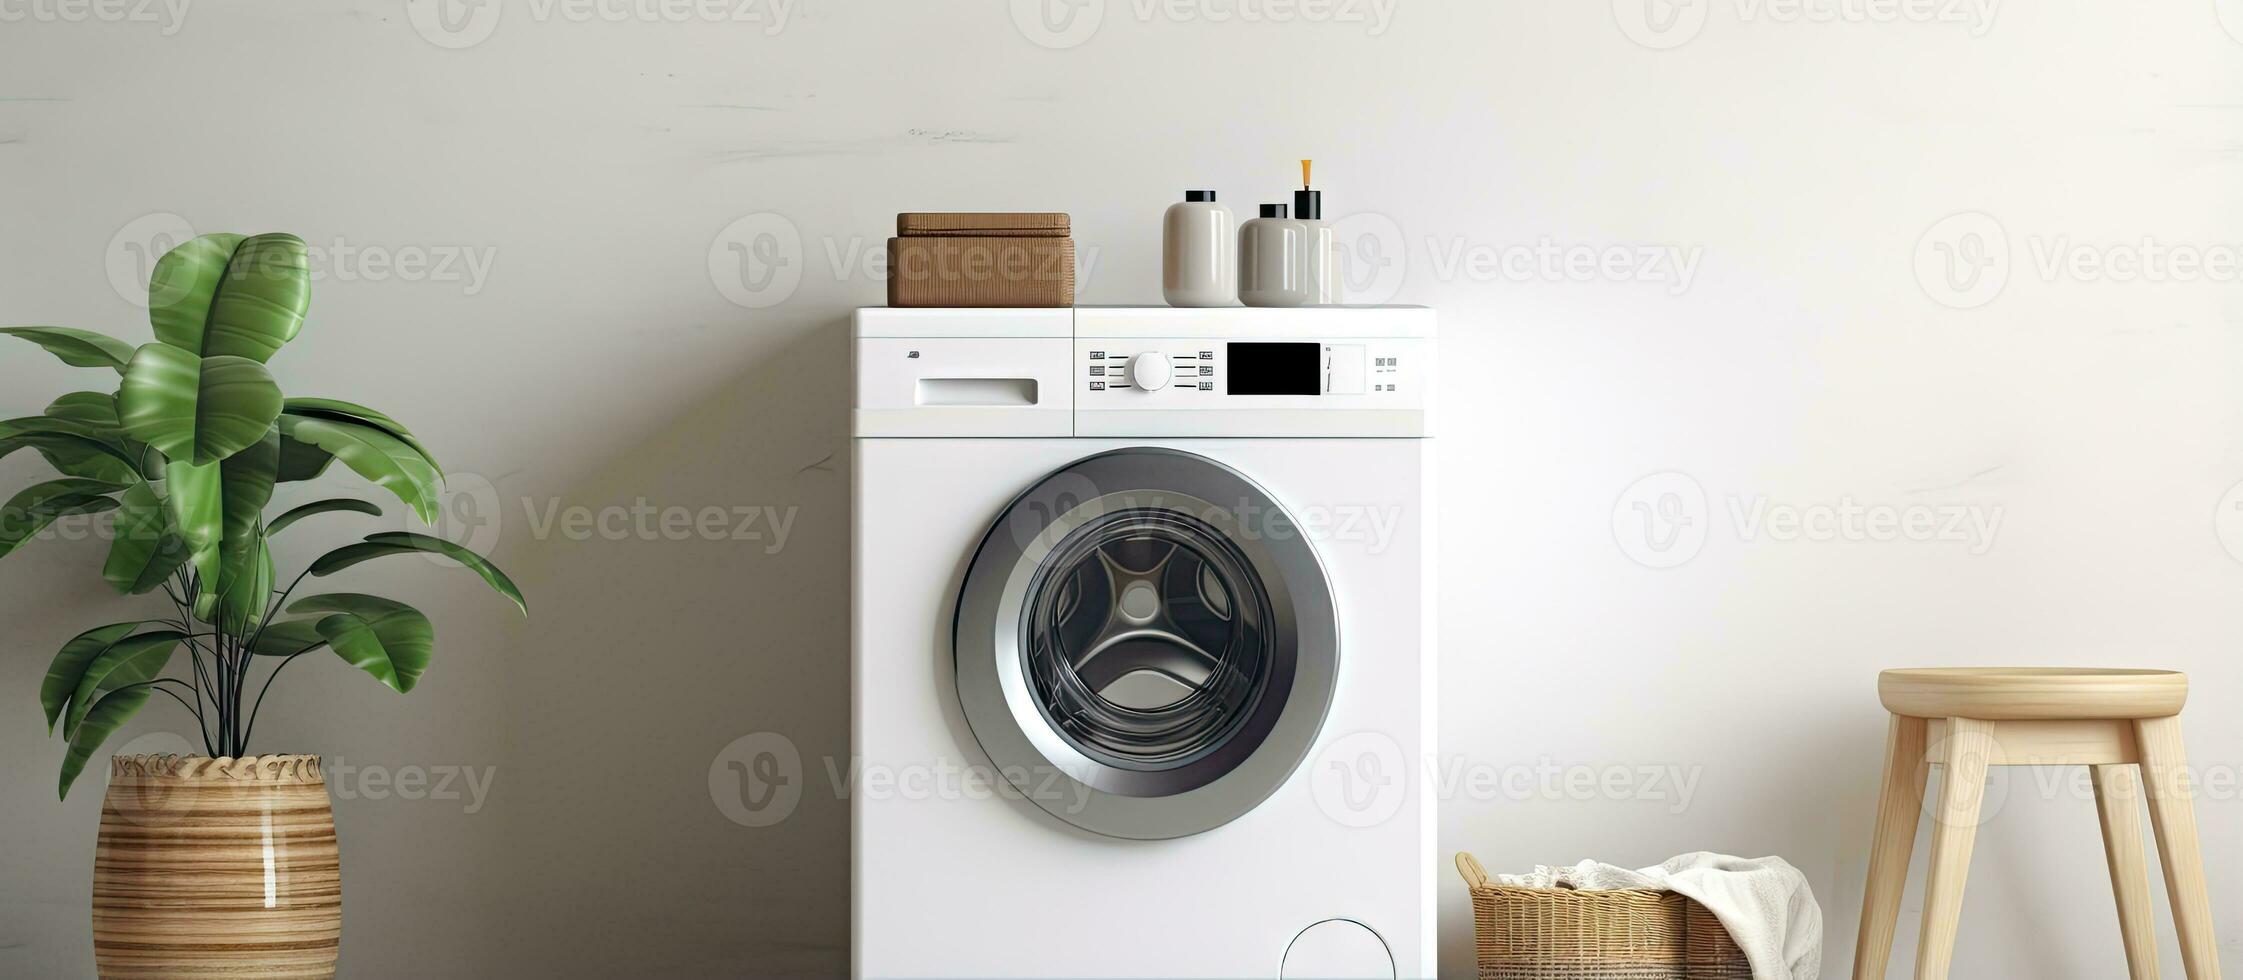 interieur van wasserij kamer met hedendaags het wassen machine ontwerp ruimte inbegrepen foto